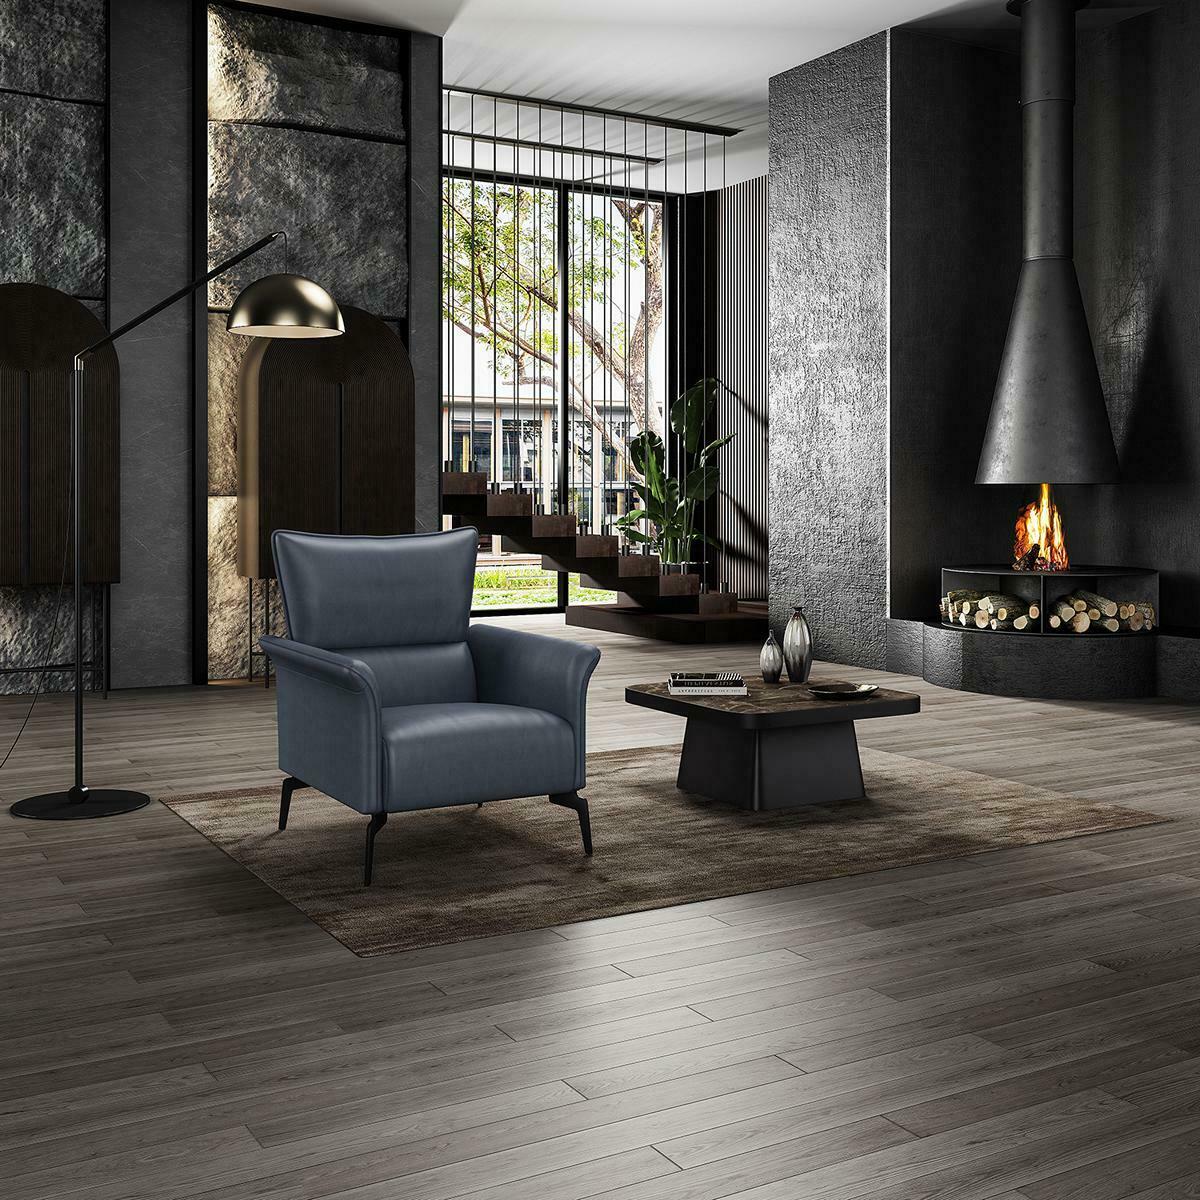 Luxus Design Möbel Stühle 88 x 85cm Moderner Design Sessel Textil